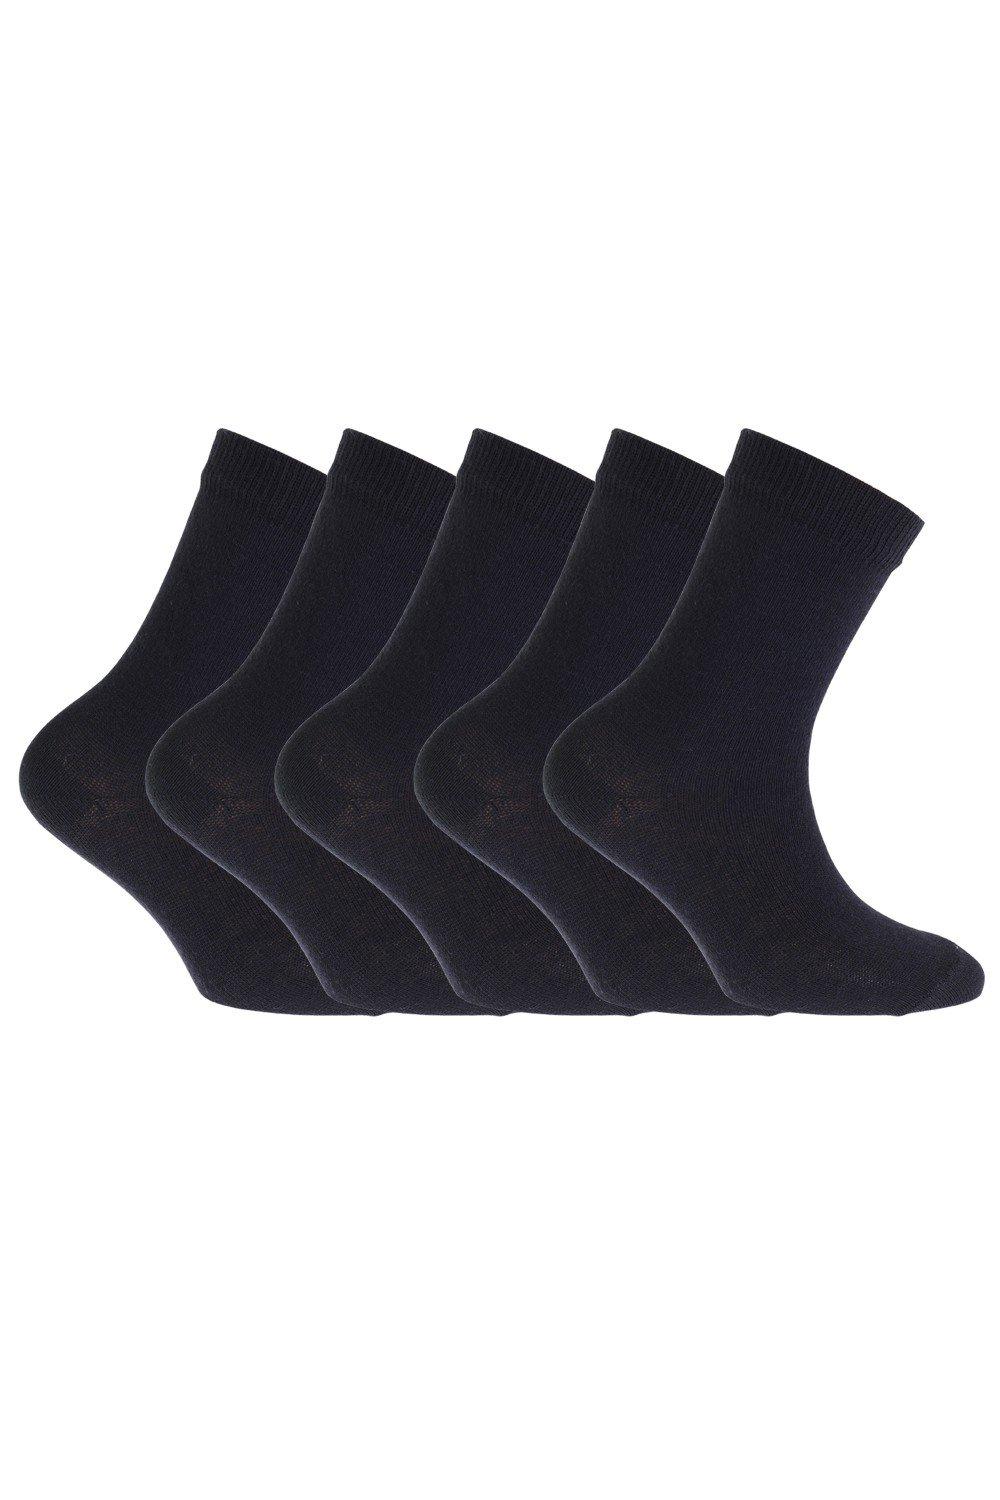 Plain School Socks (Pack Of 5)